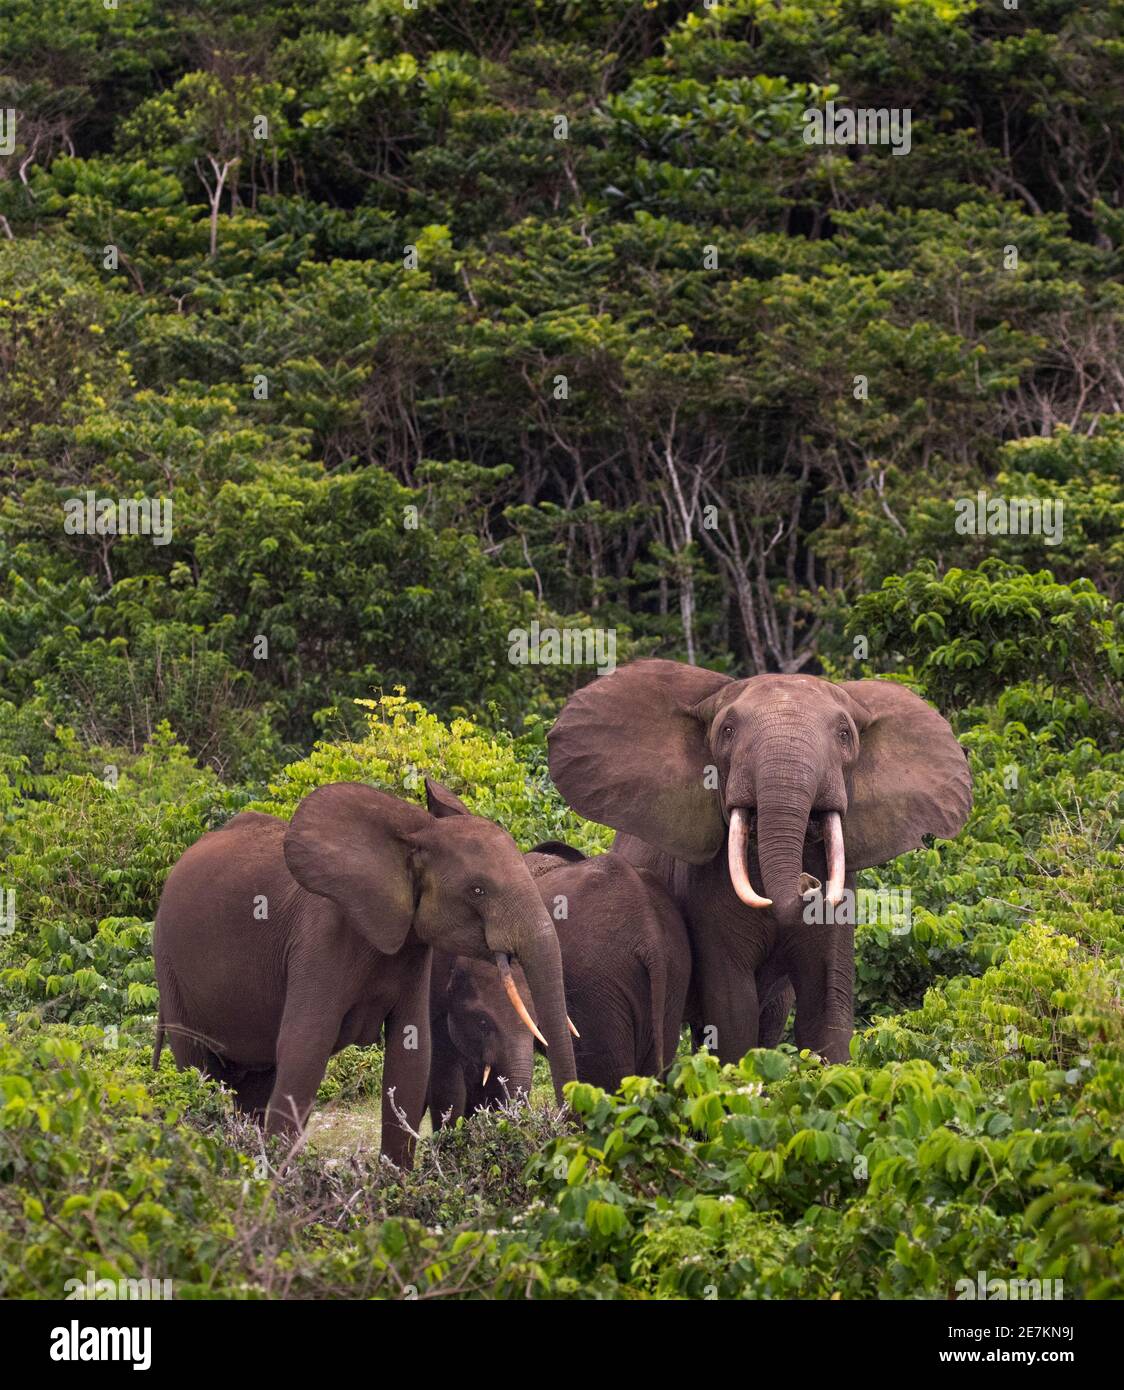 Elefante forestal africano (Loxodonta cyclotis), familia en estrecha formación protectora con jóvenes en el centro, Parque Nacional Loango, Gabón. Foto de stock